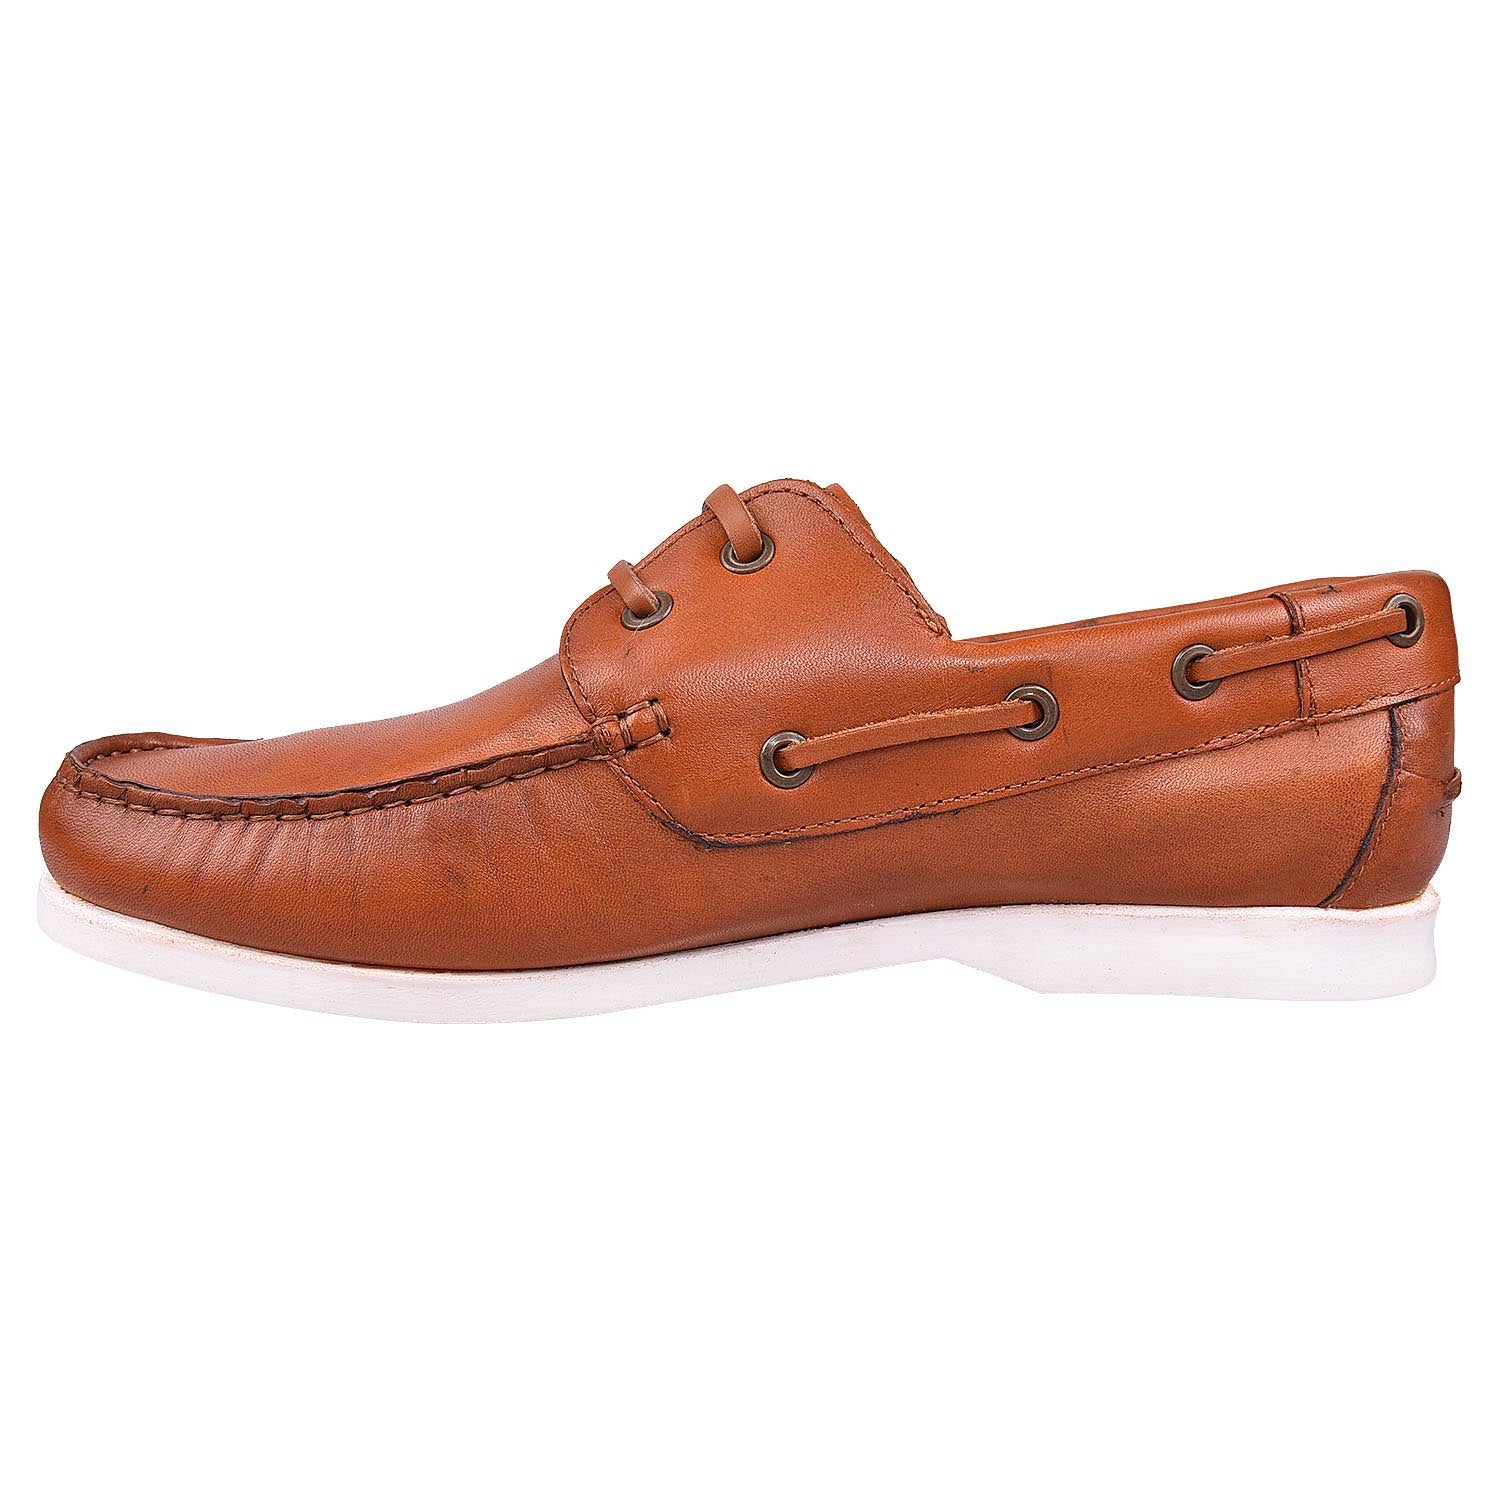 LEDERWARREN Boat Tan Shoes